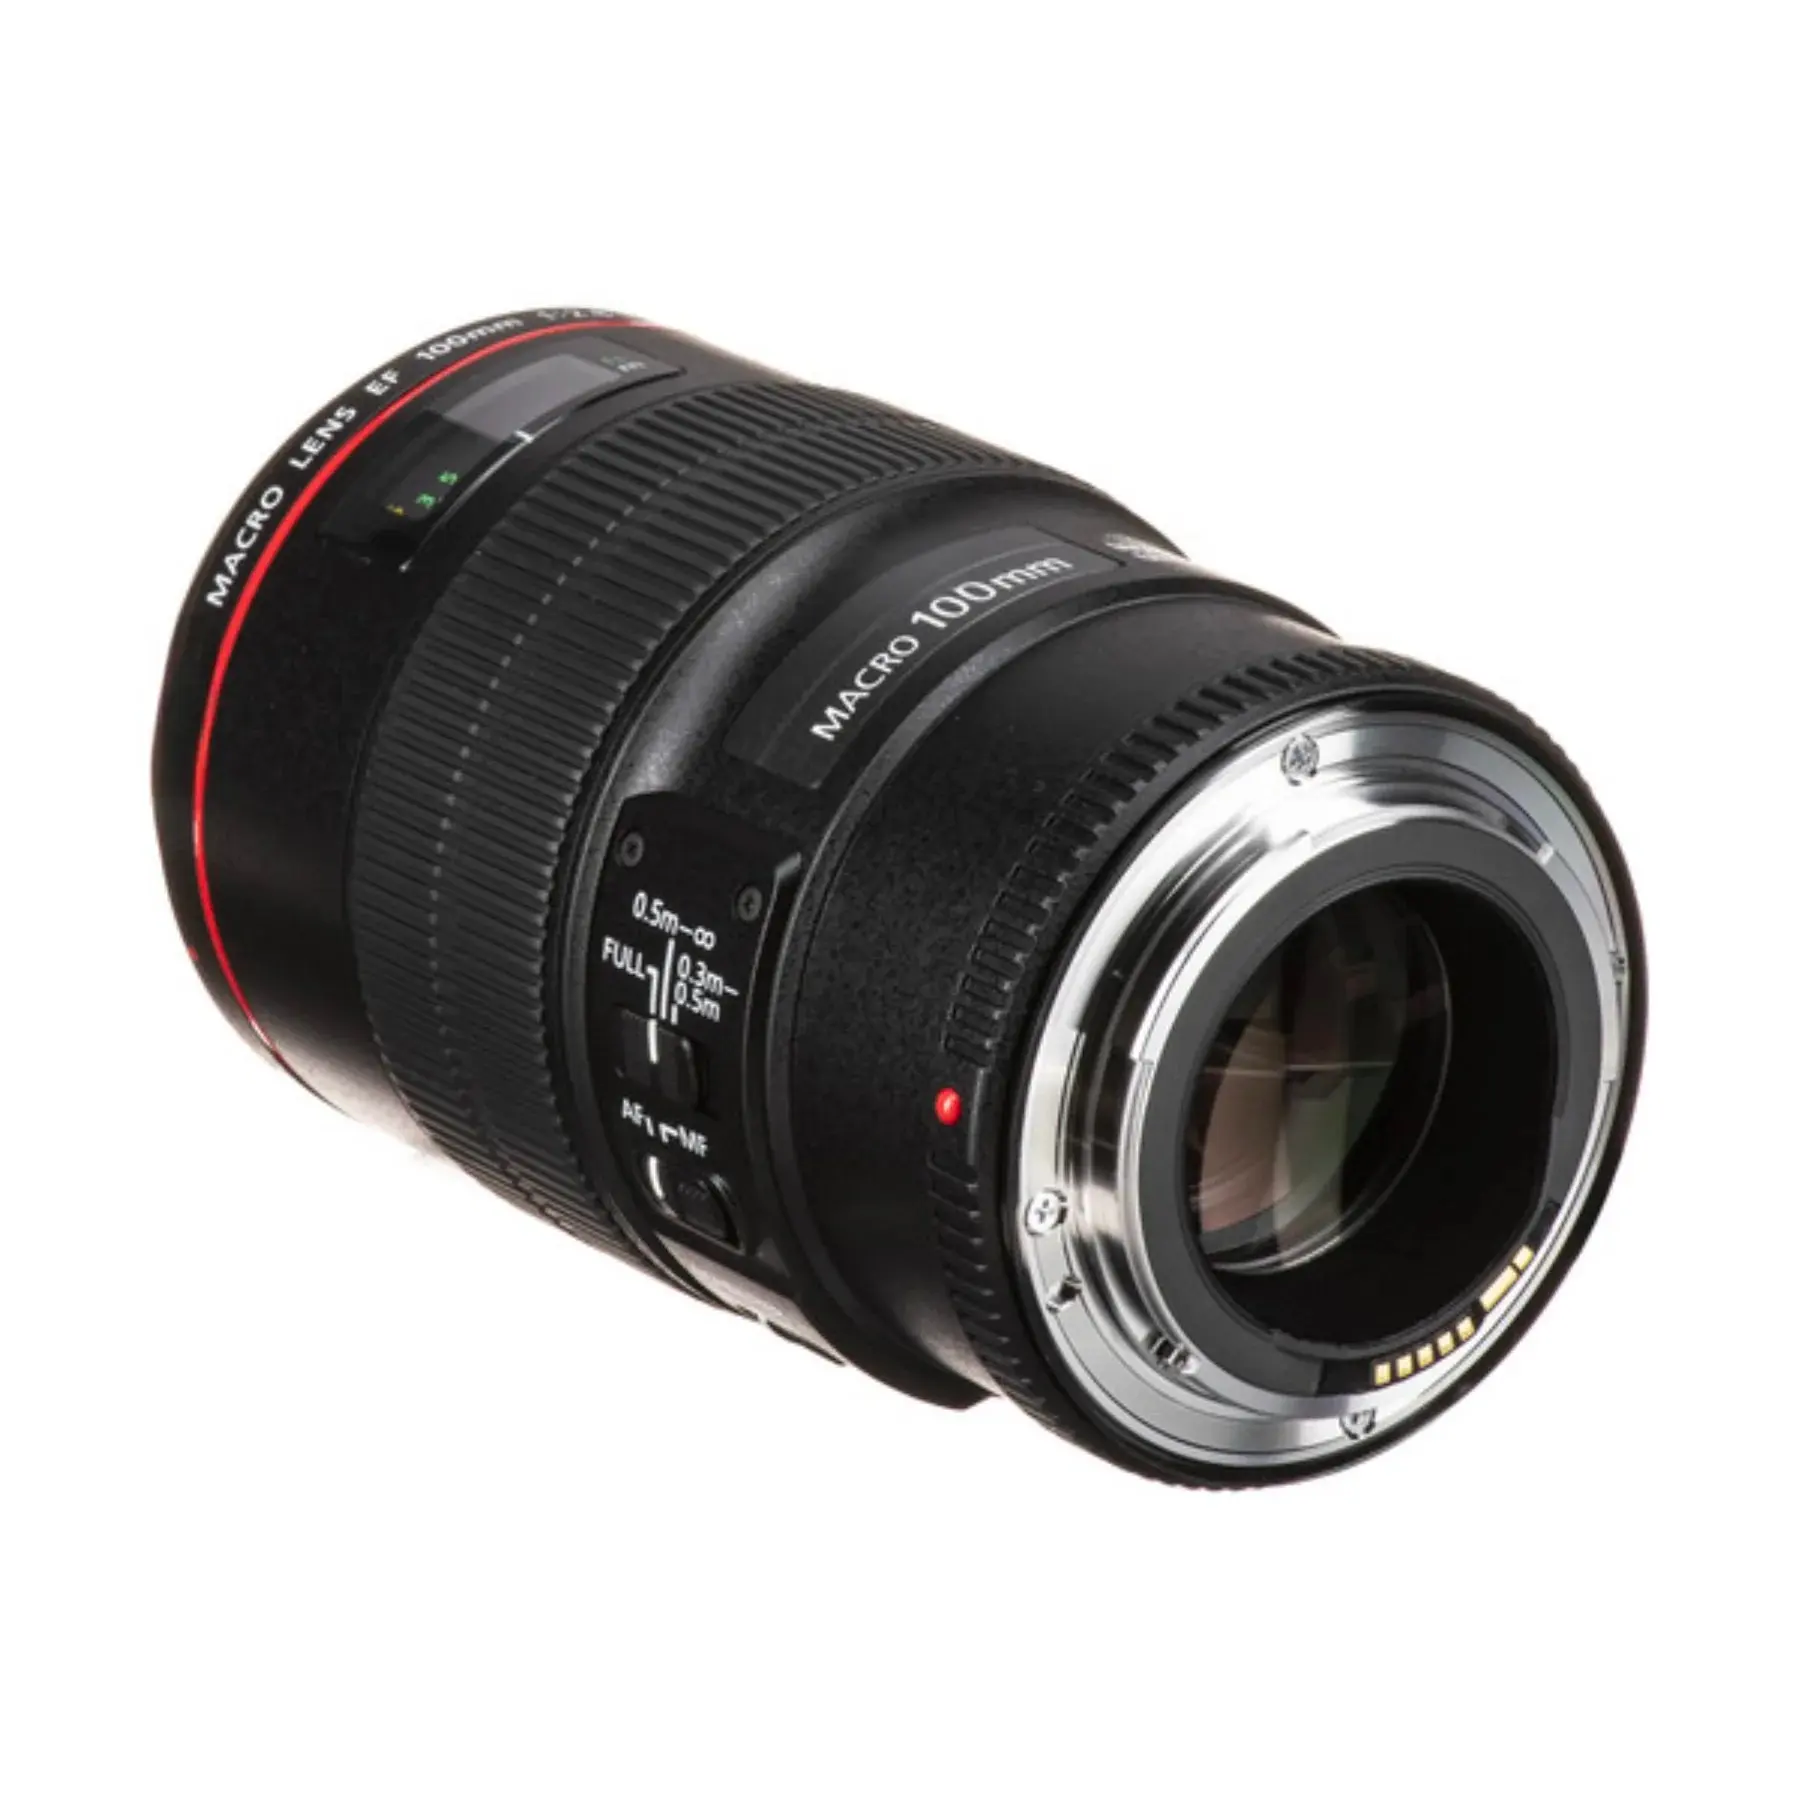 FACTORY PRICE OEM EF 100mm f/2.8L IS USM Macro Lens for Digital SLR Cameras, Lens Only Camera Lenses